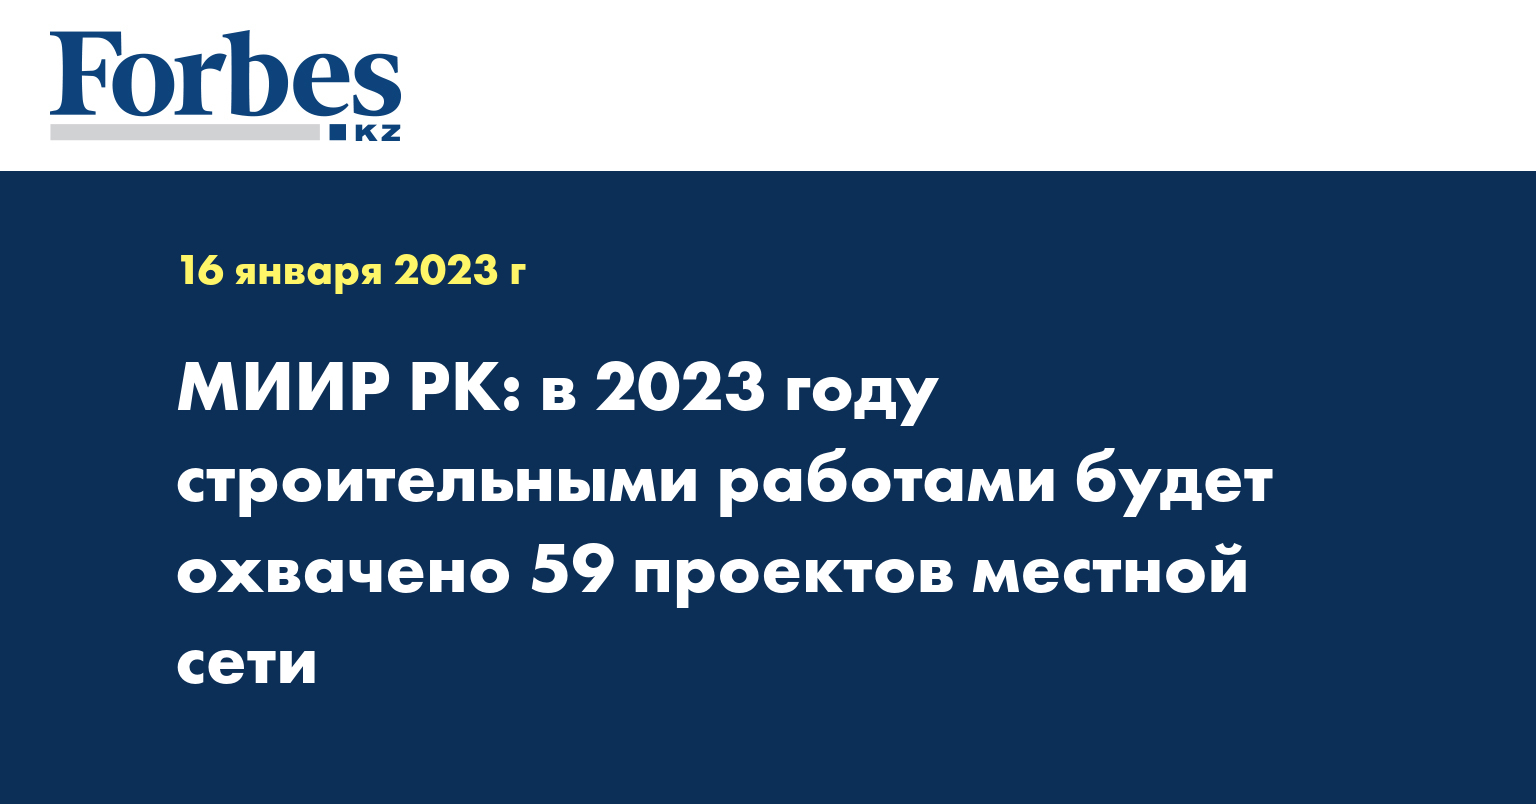 Изменения в казахстане в 2023 году